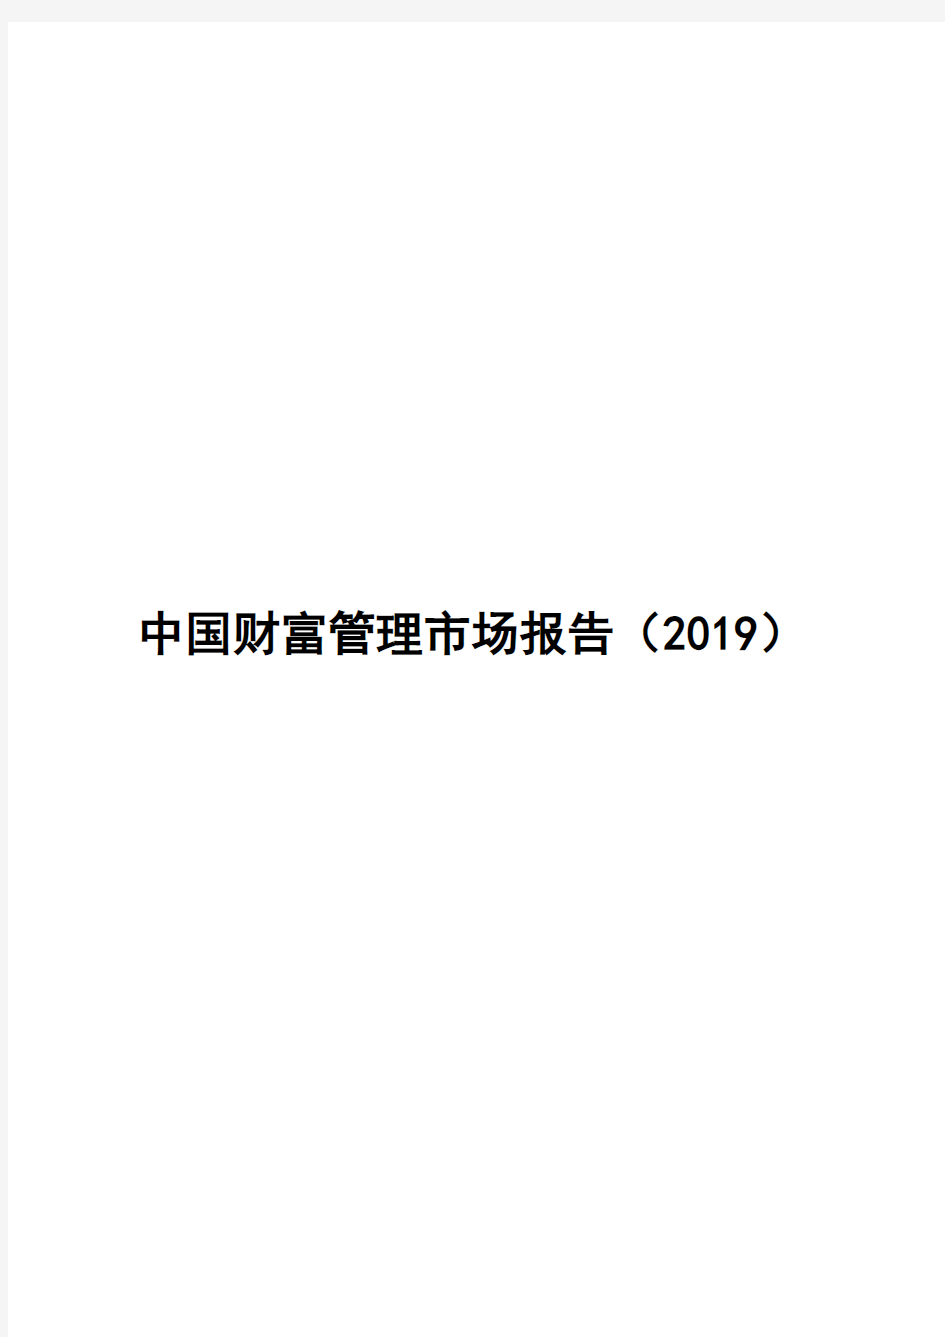 2019-2020年中国财富管理市场报告